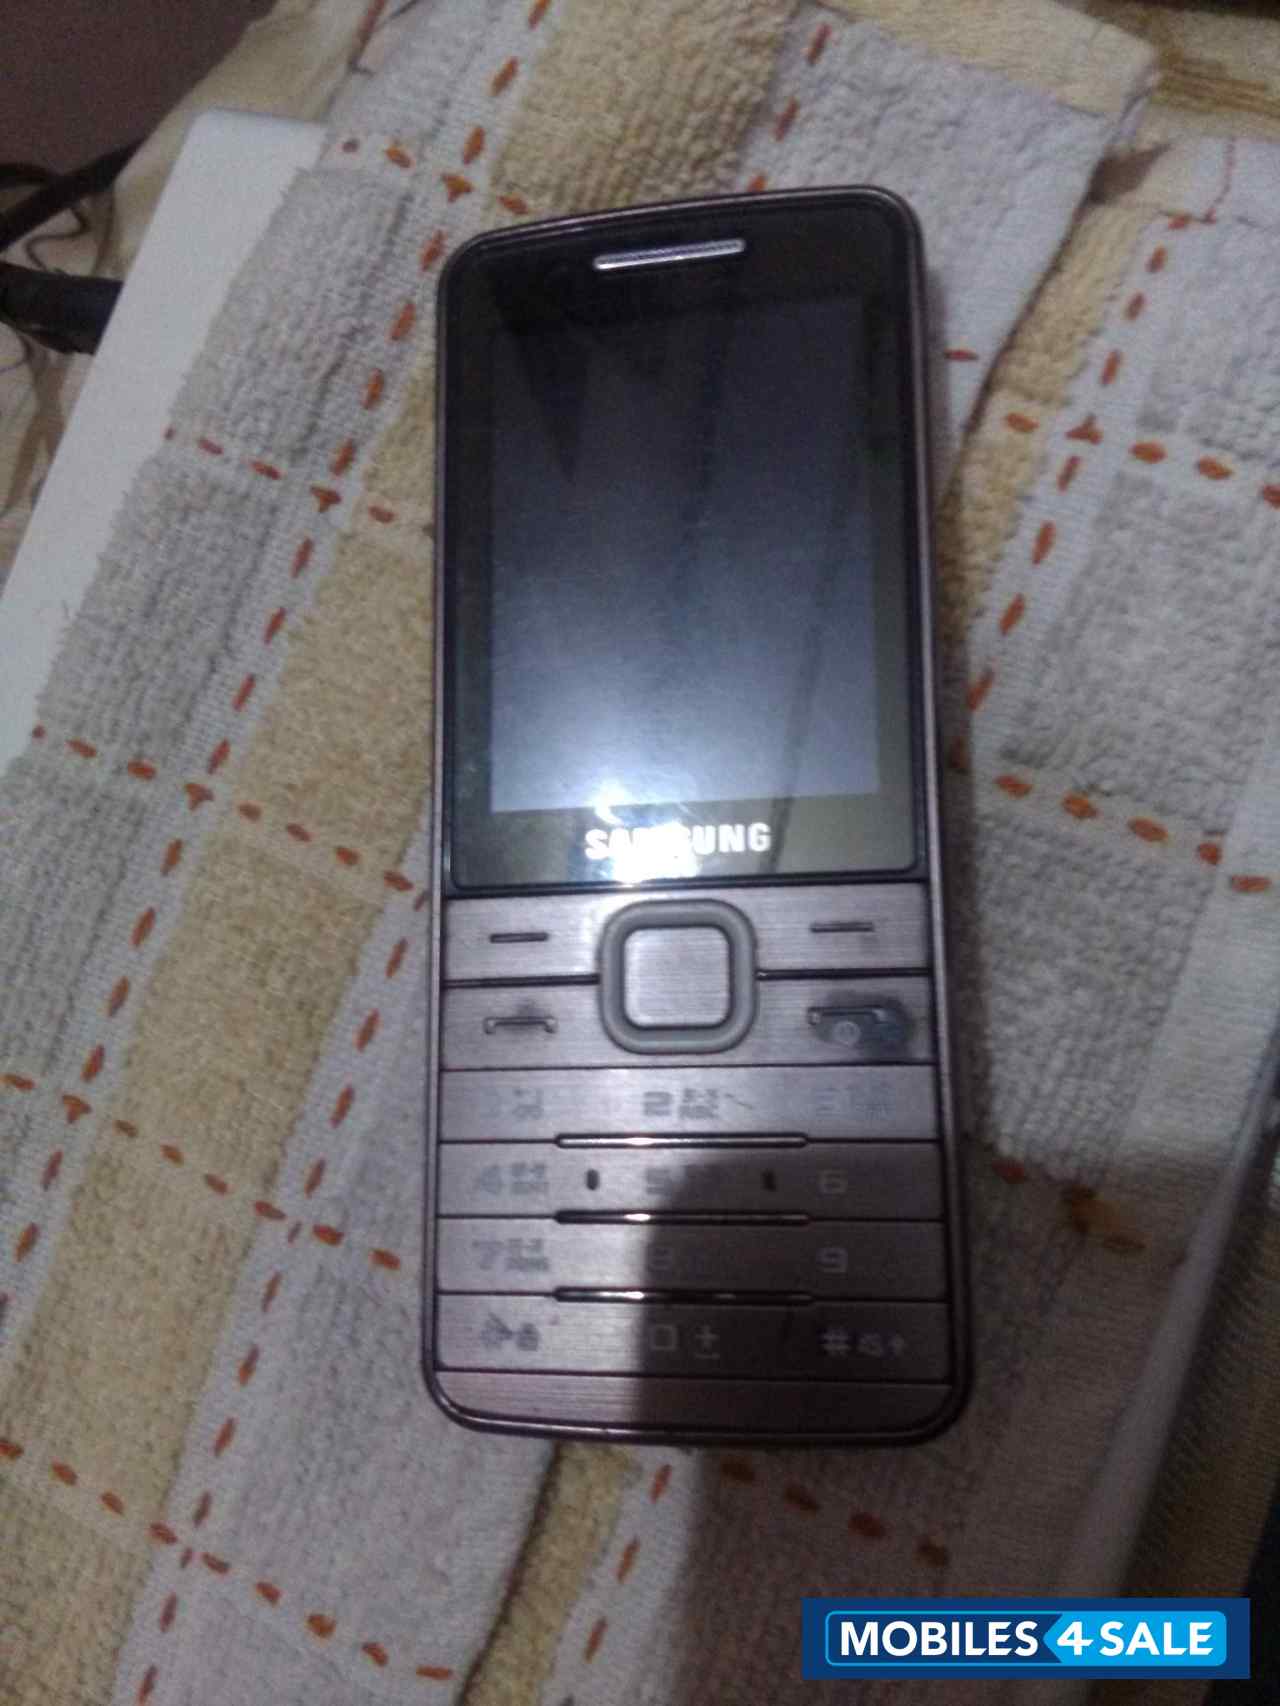 Samsung  GT-s5610k